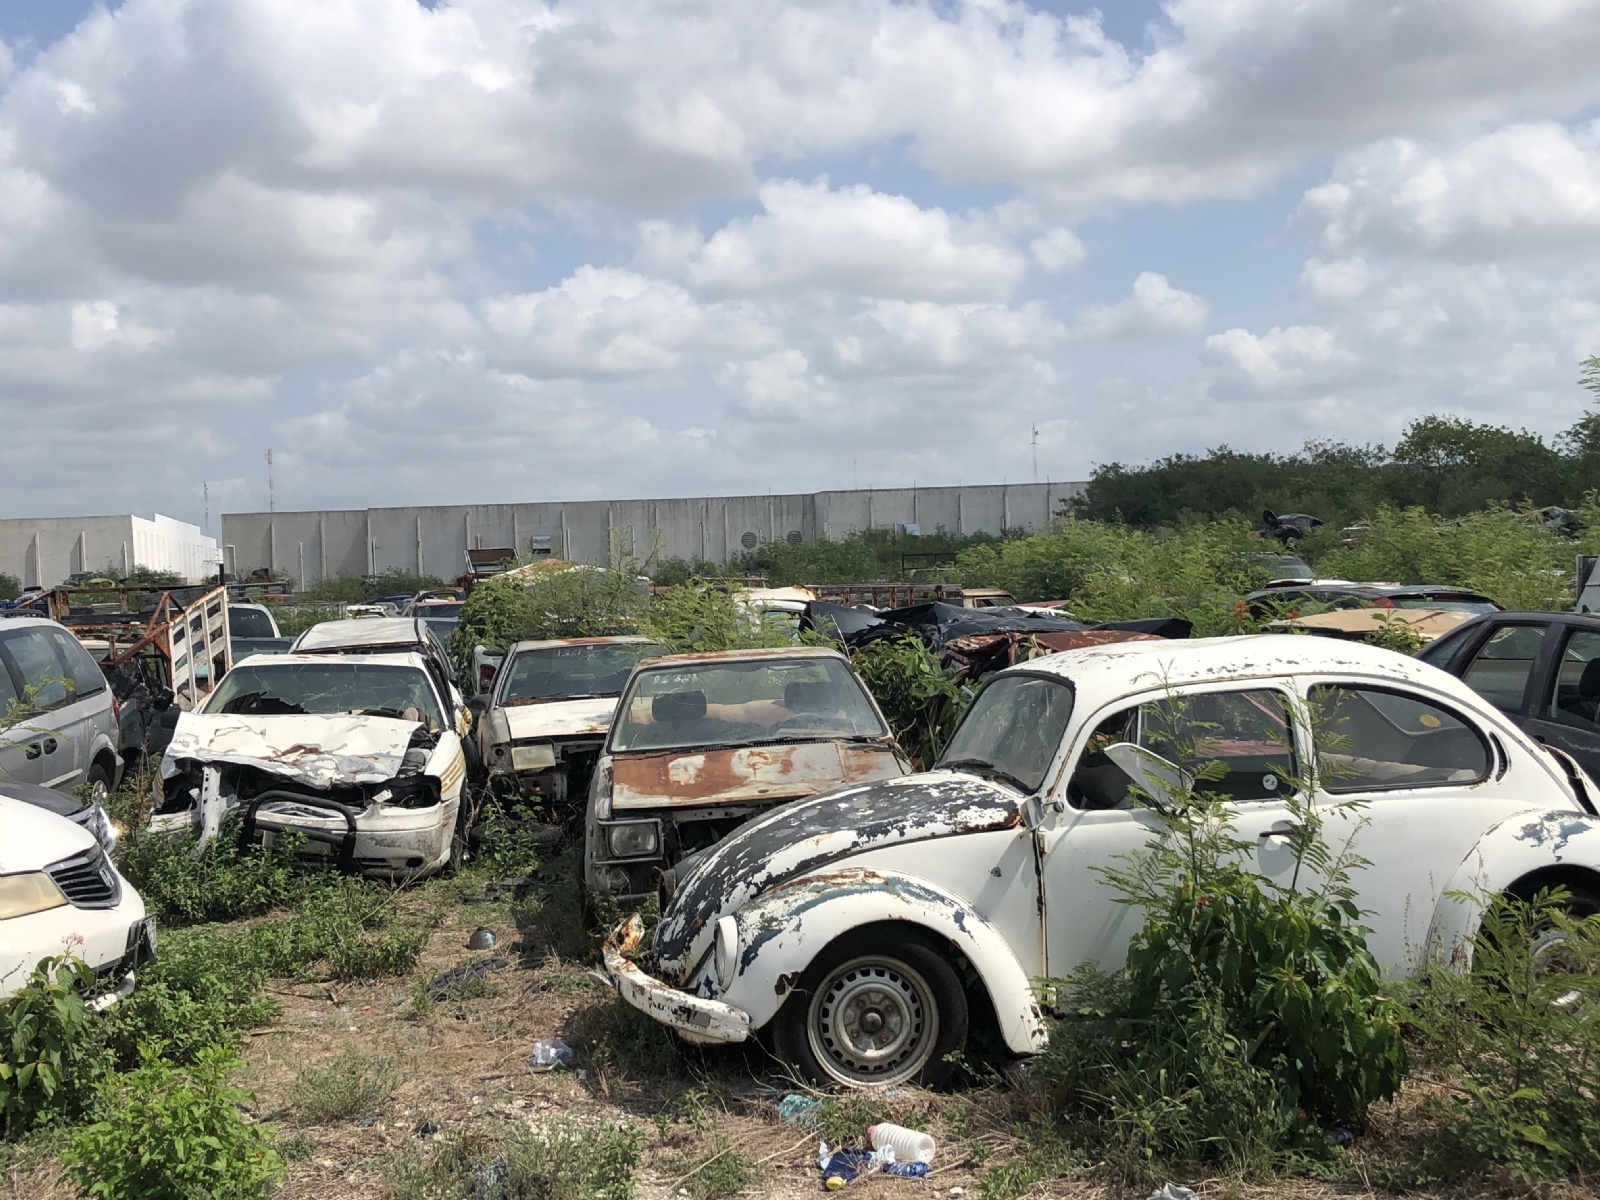 Rematarán más de seis mil vehículos abandonados en corralones de Yucatán